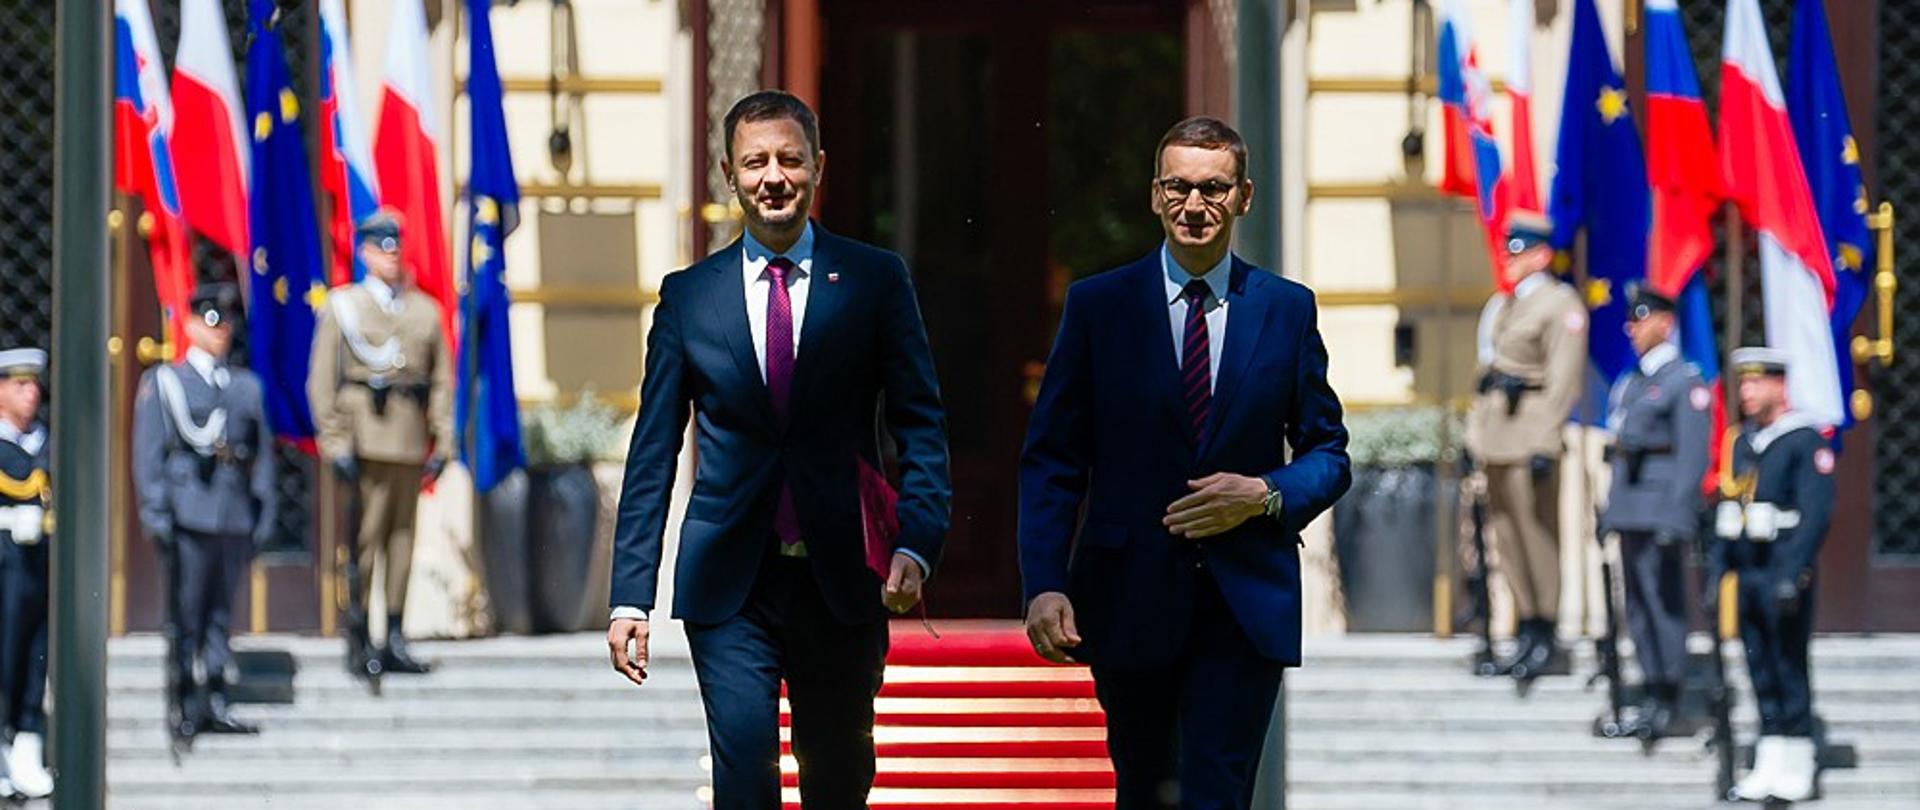 Premier Słowacji oraz premier Mateusz Morawiecki idą.